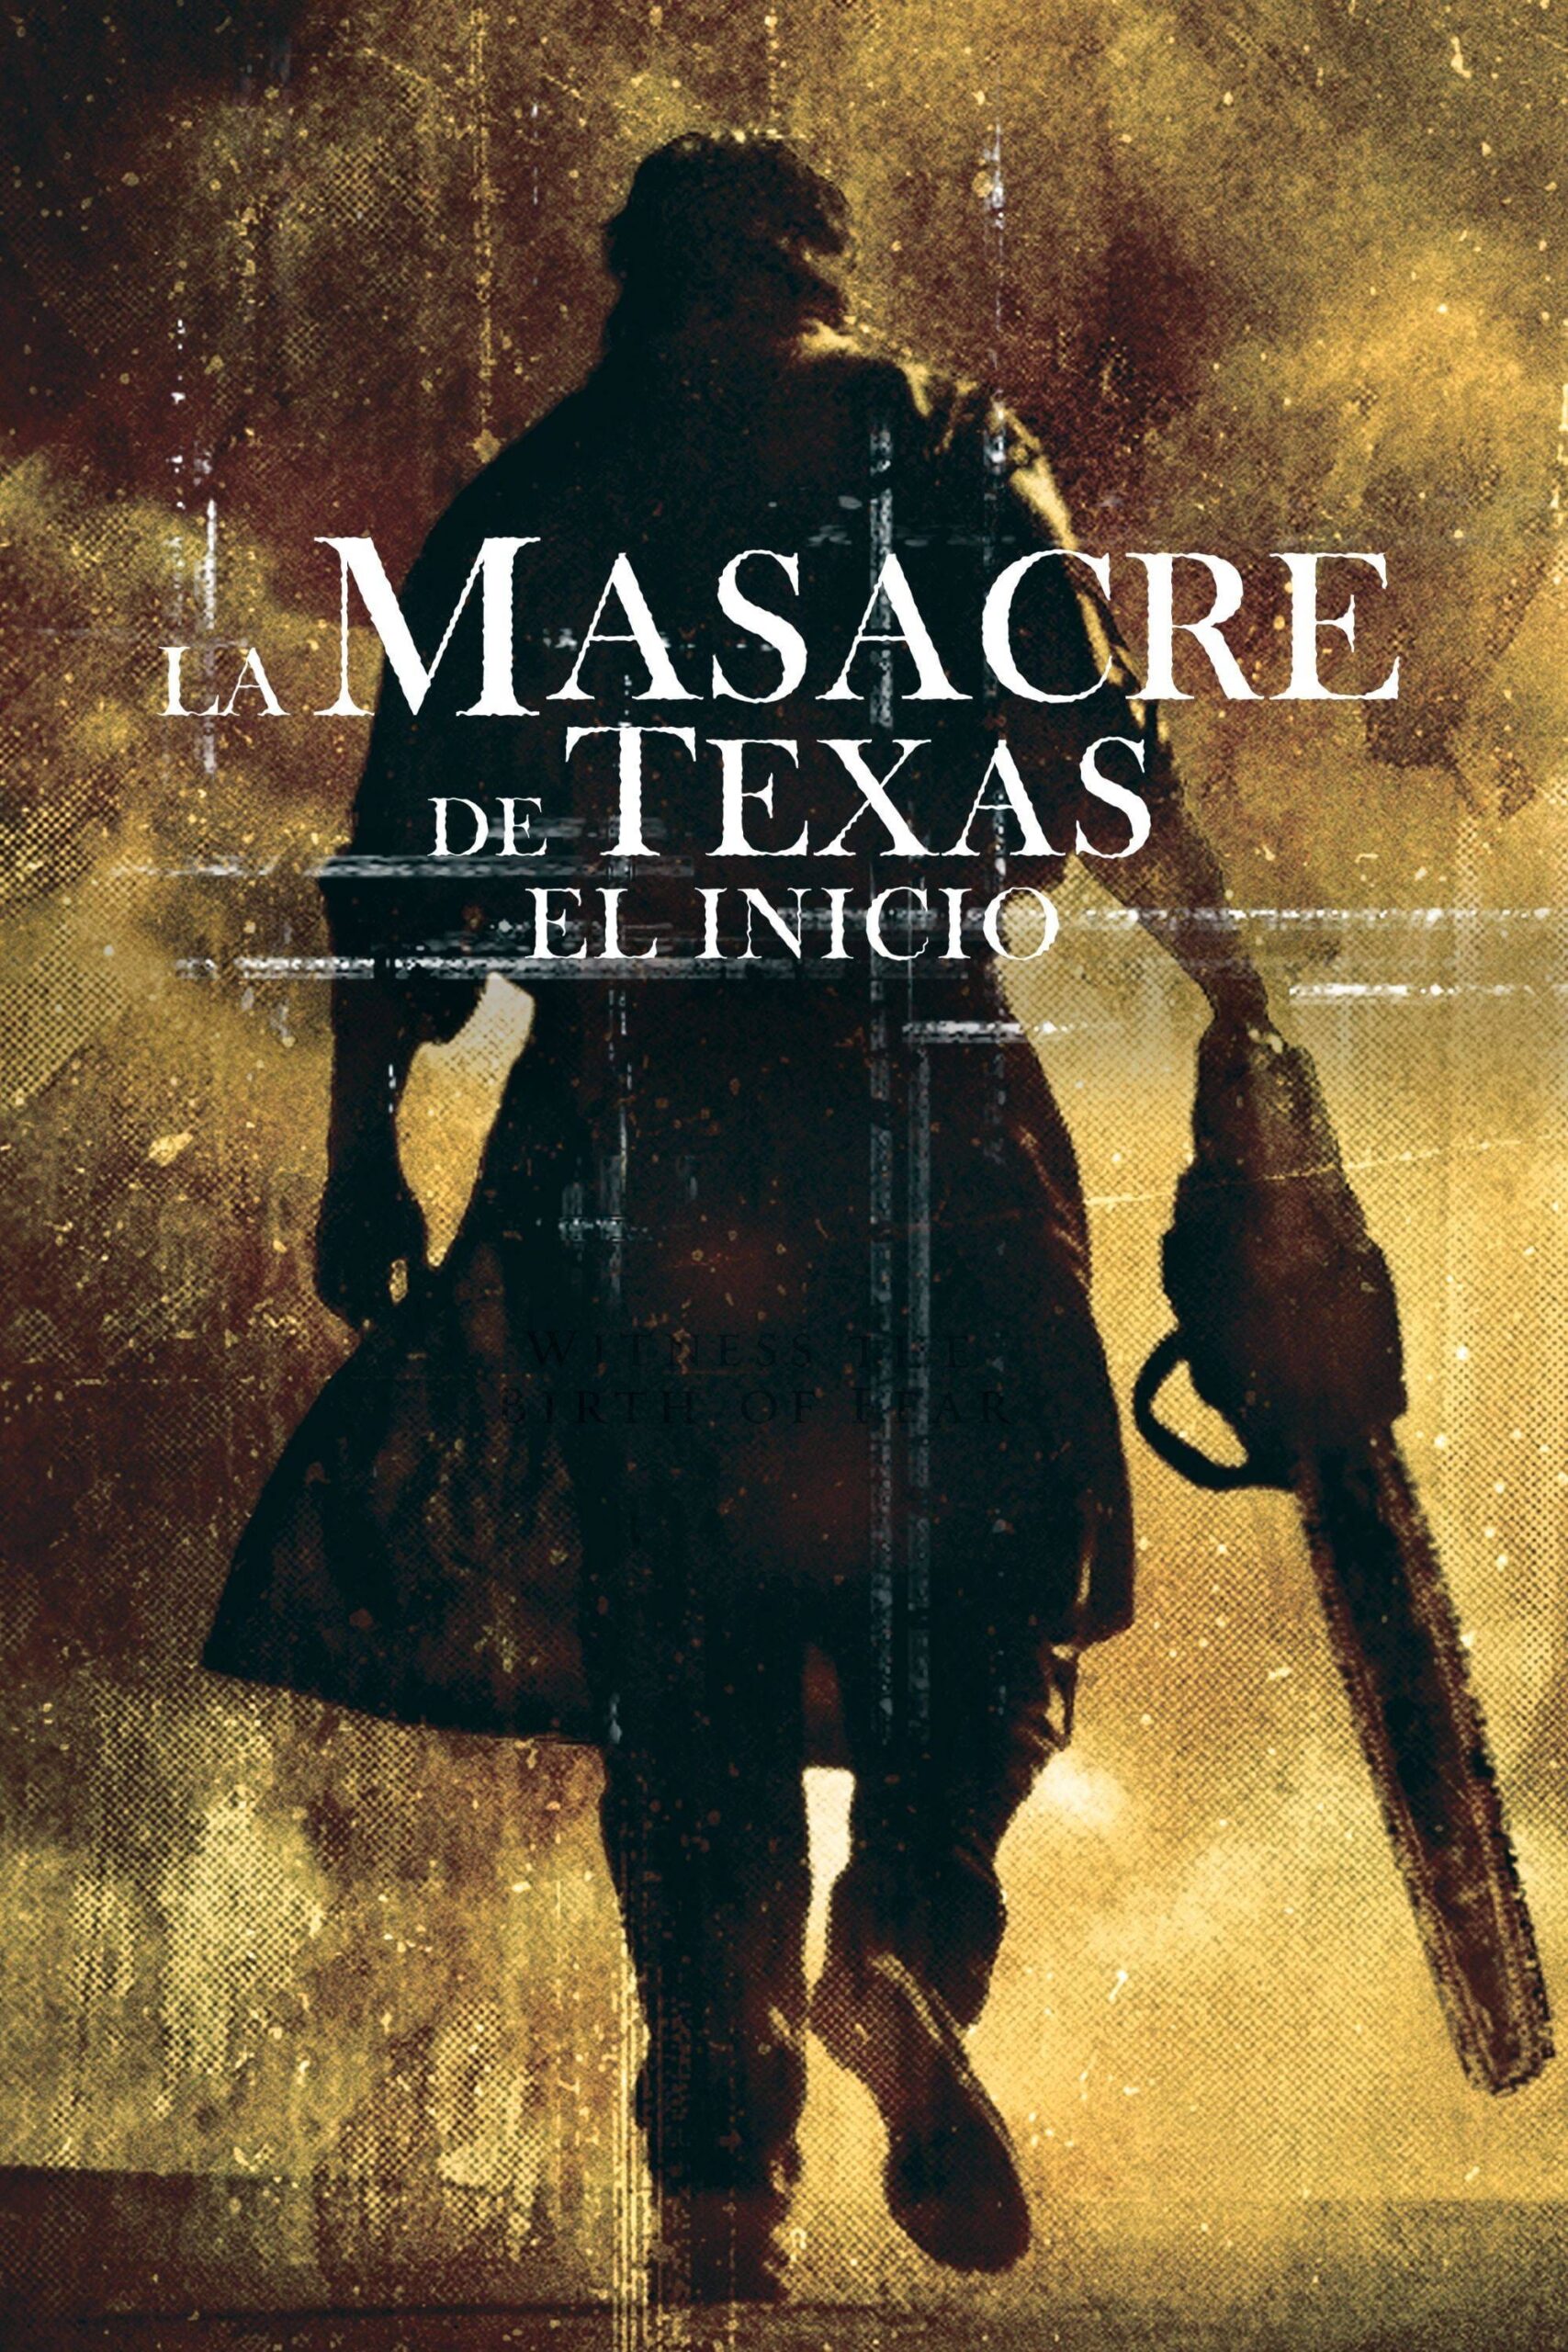 La Masacre de Texas: El origen (2006)